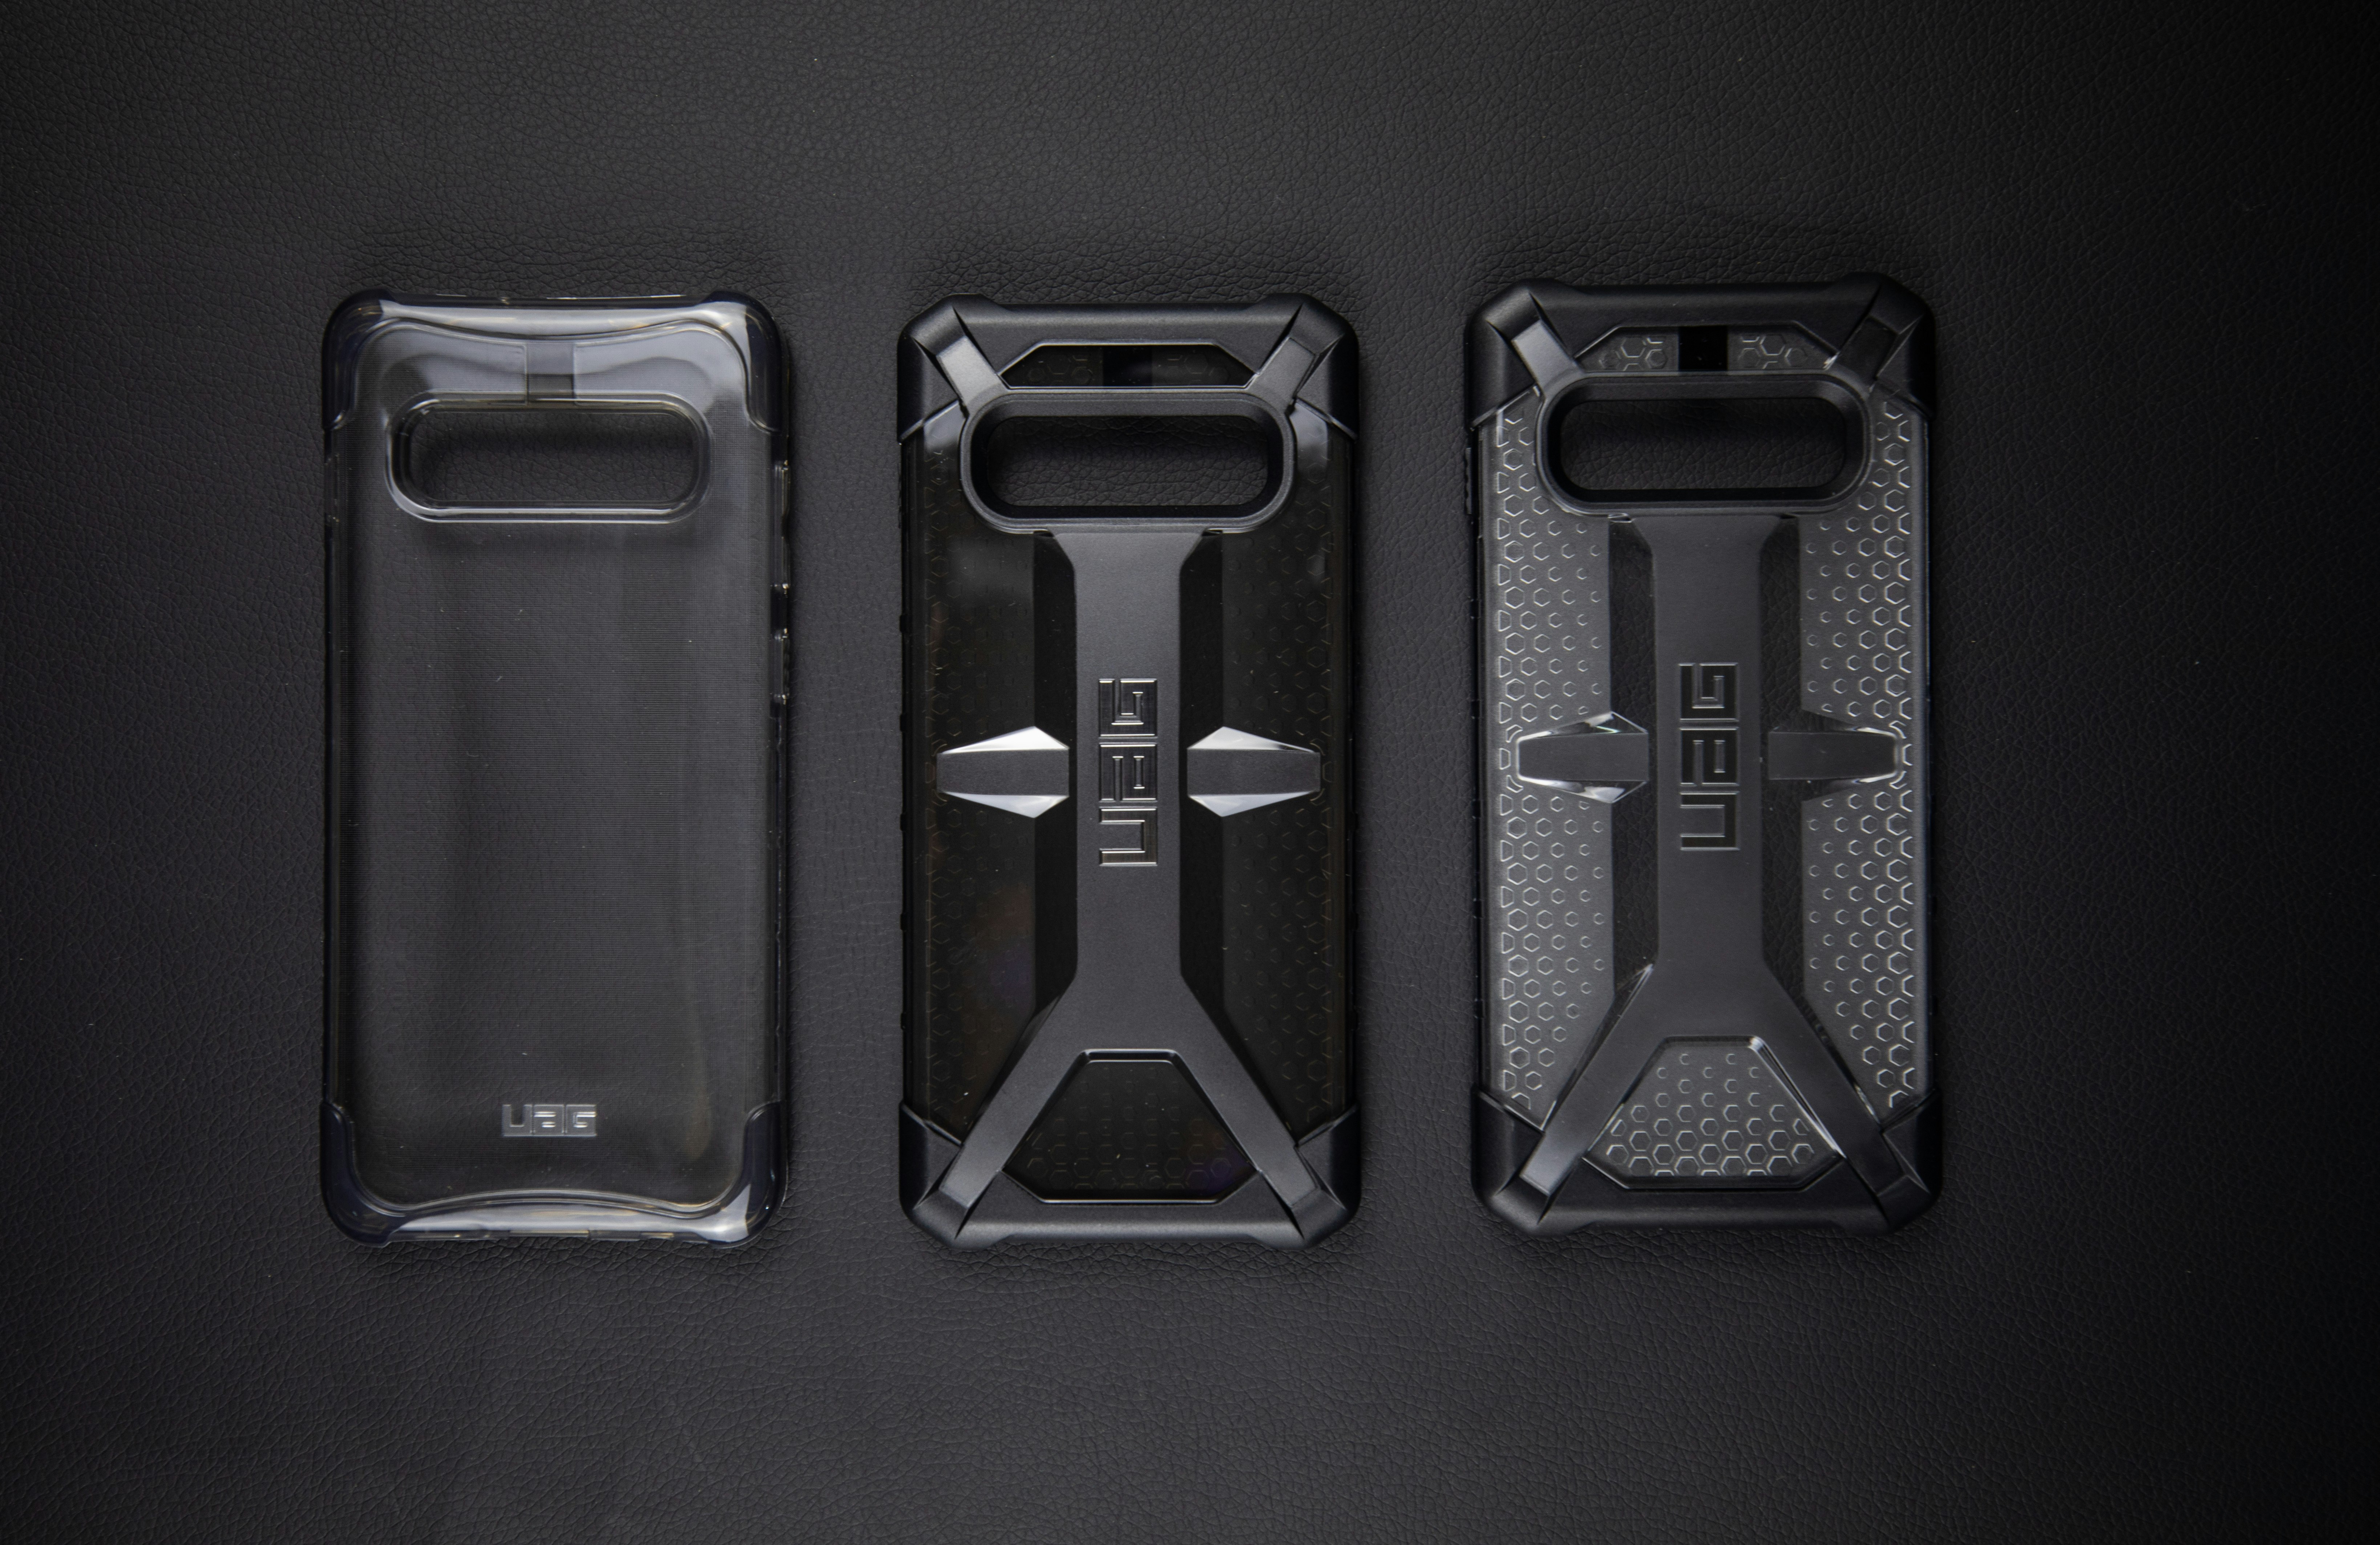 three UAG smartphone cases